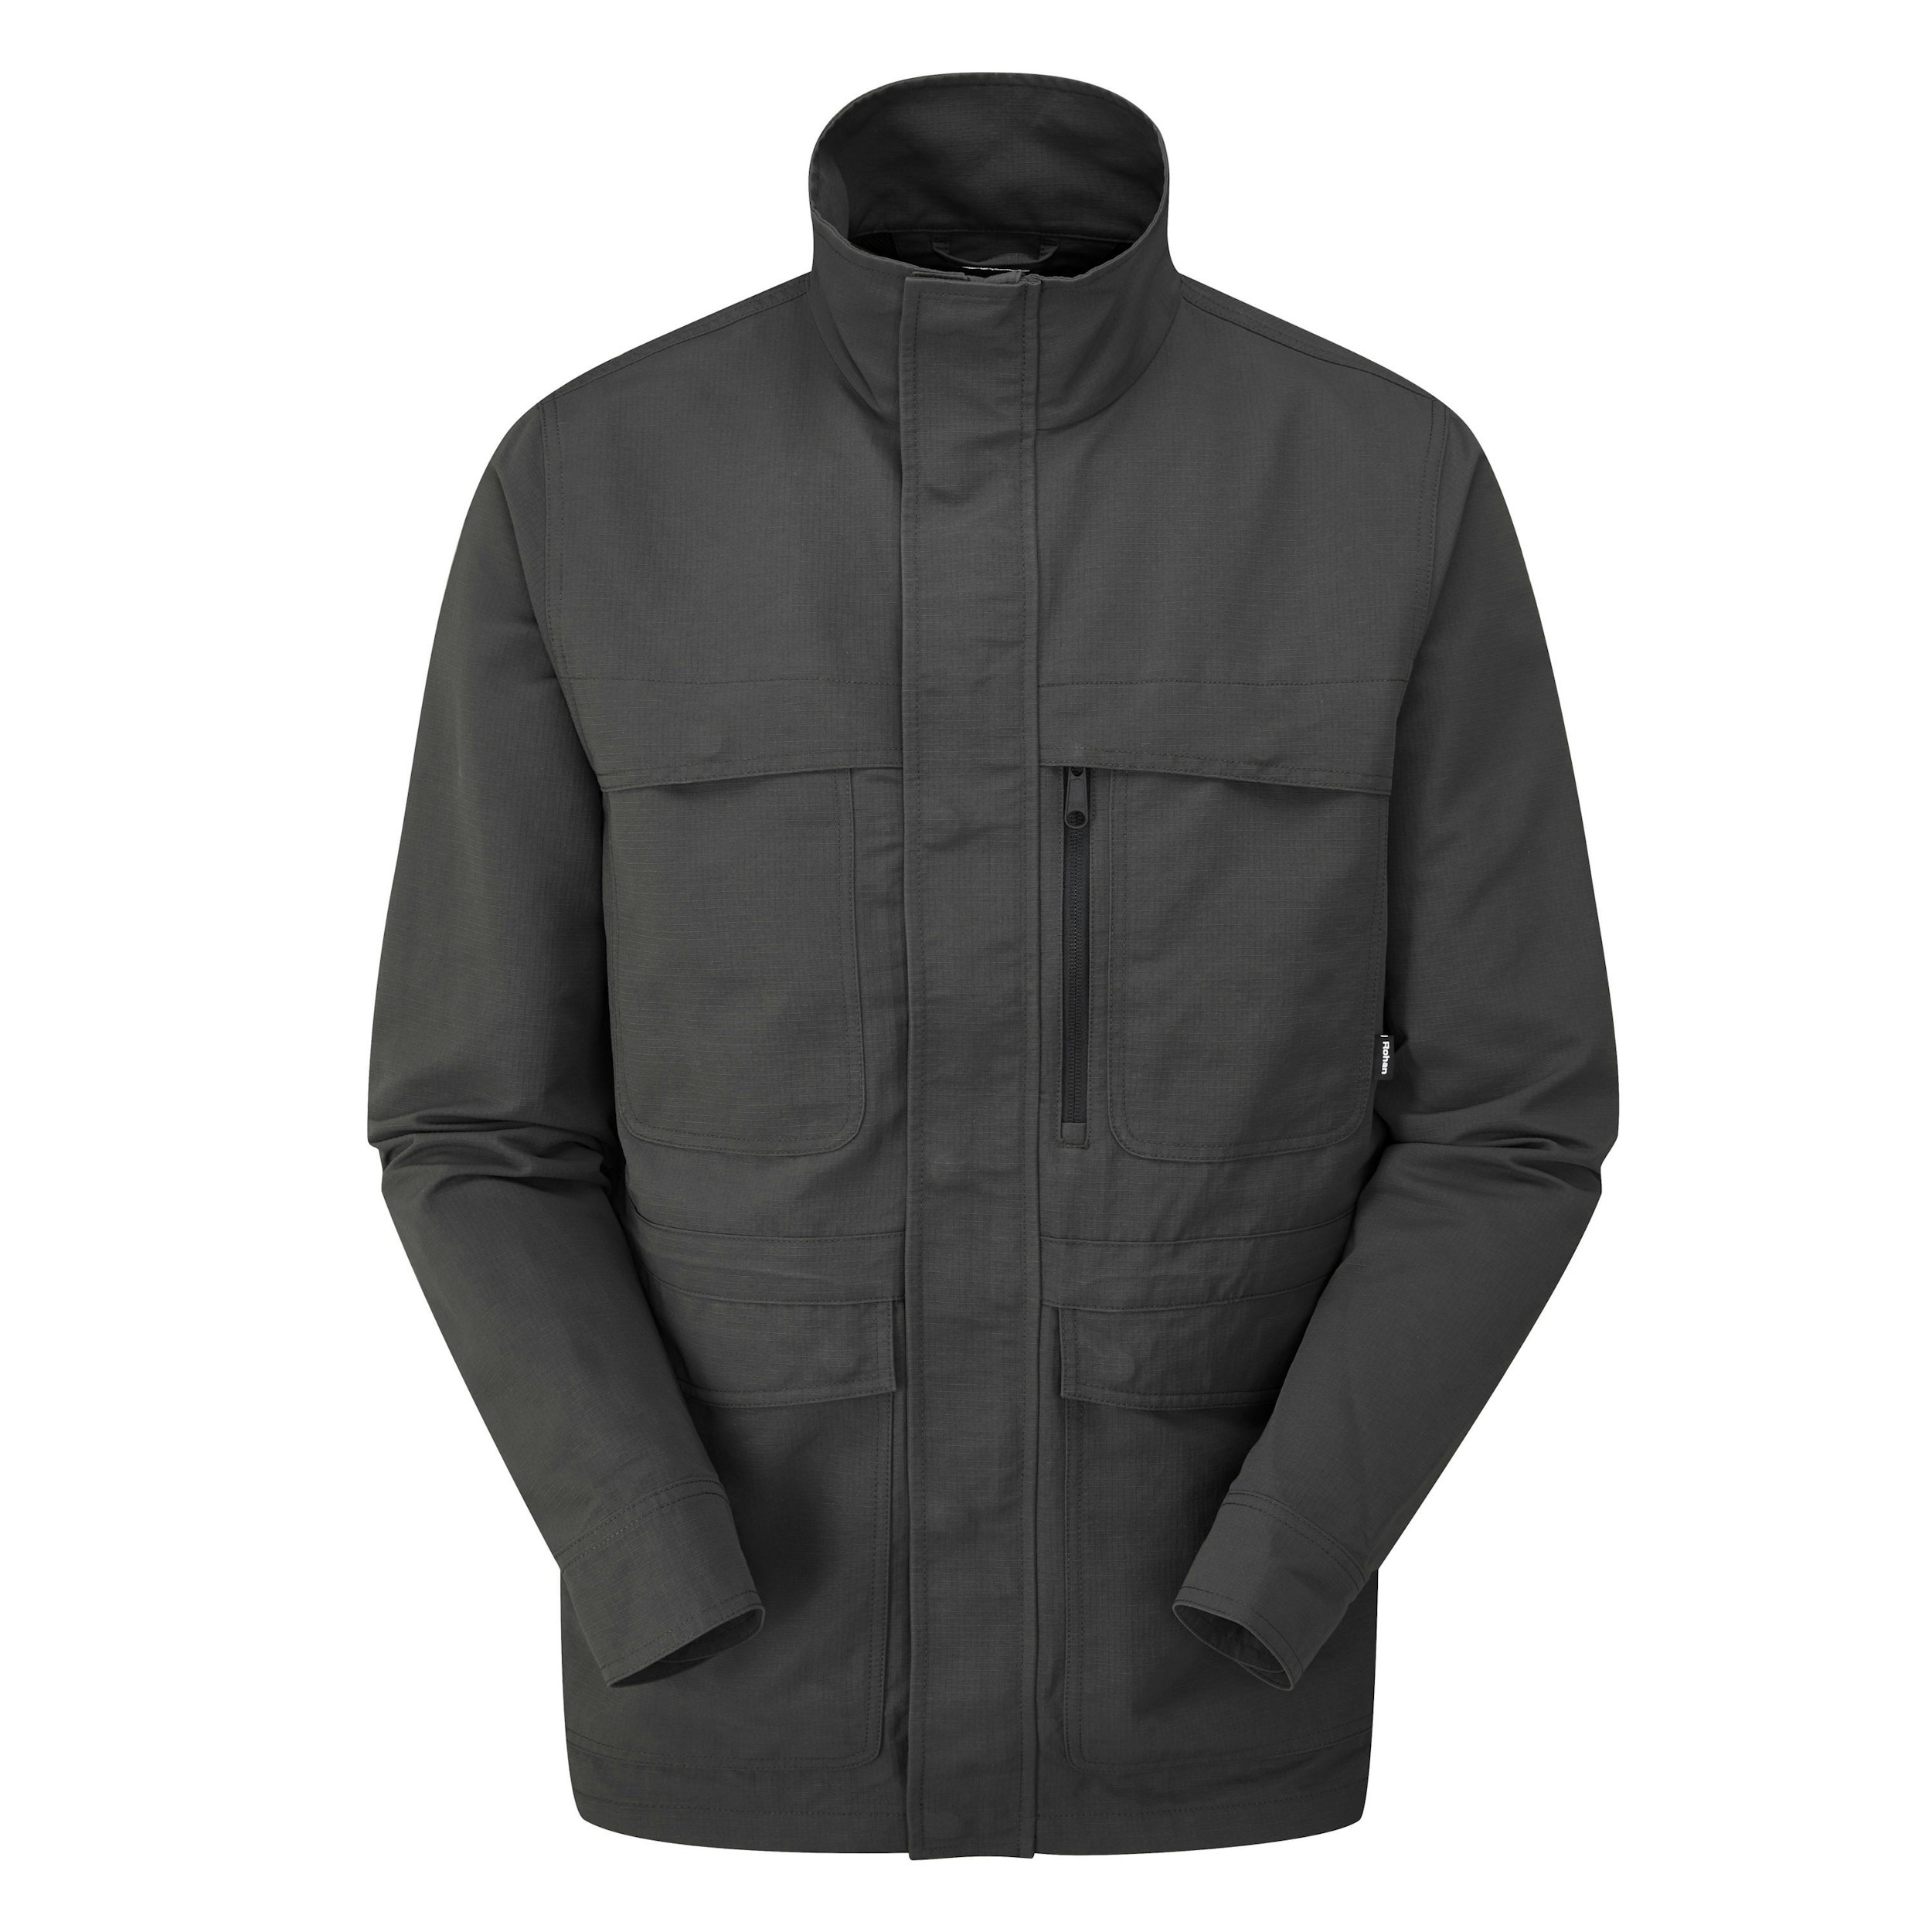 Men's Frontier Jacket - Rugged, practical multi-pocket jacket.